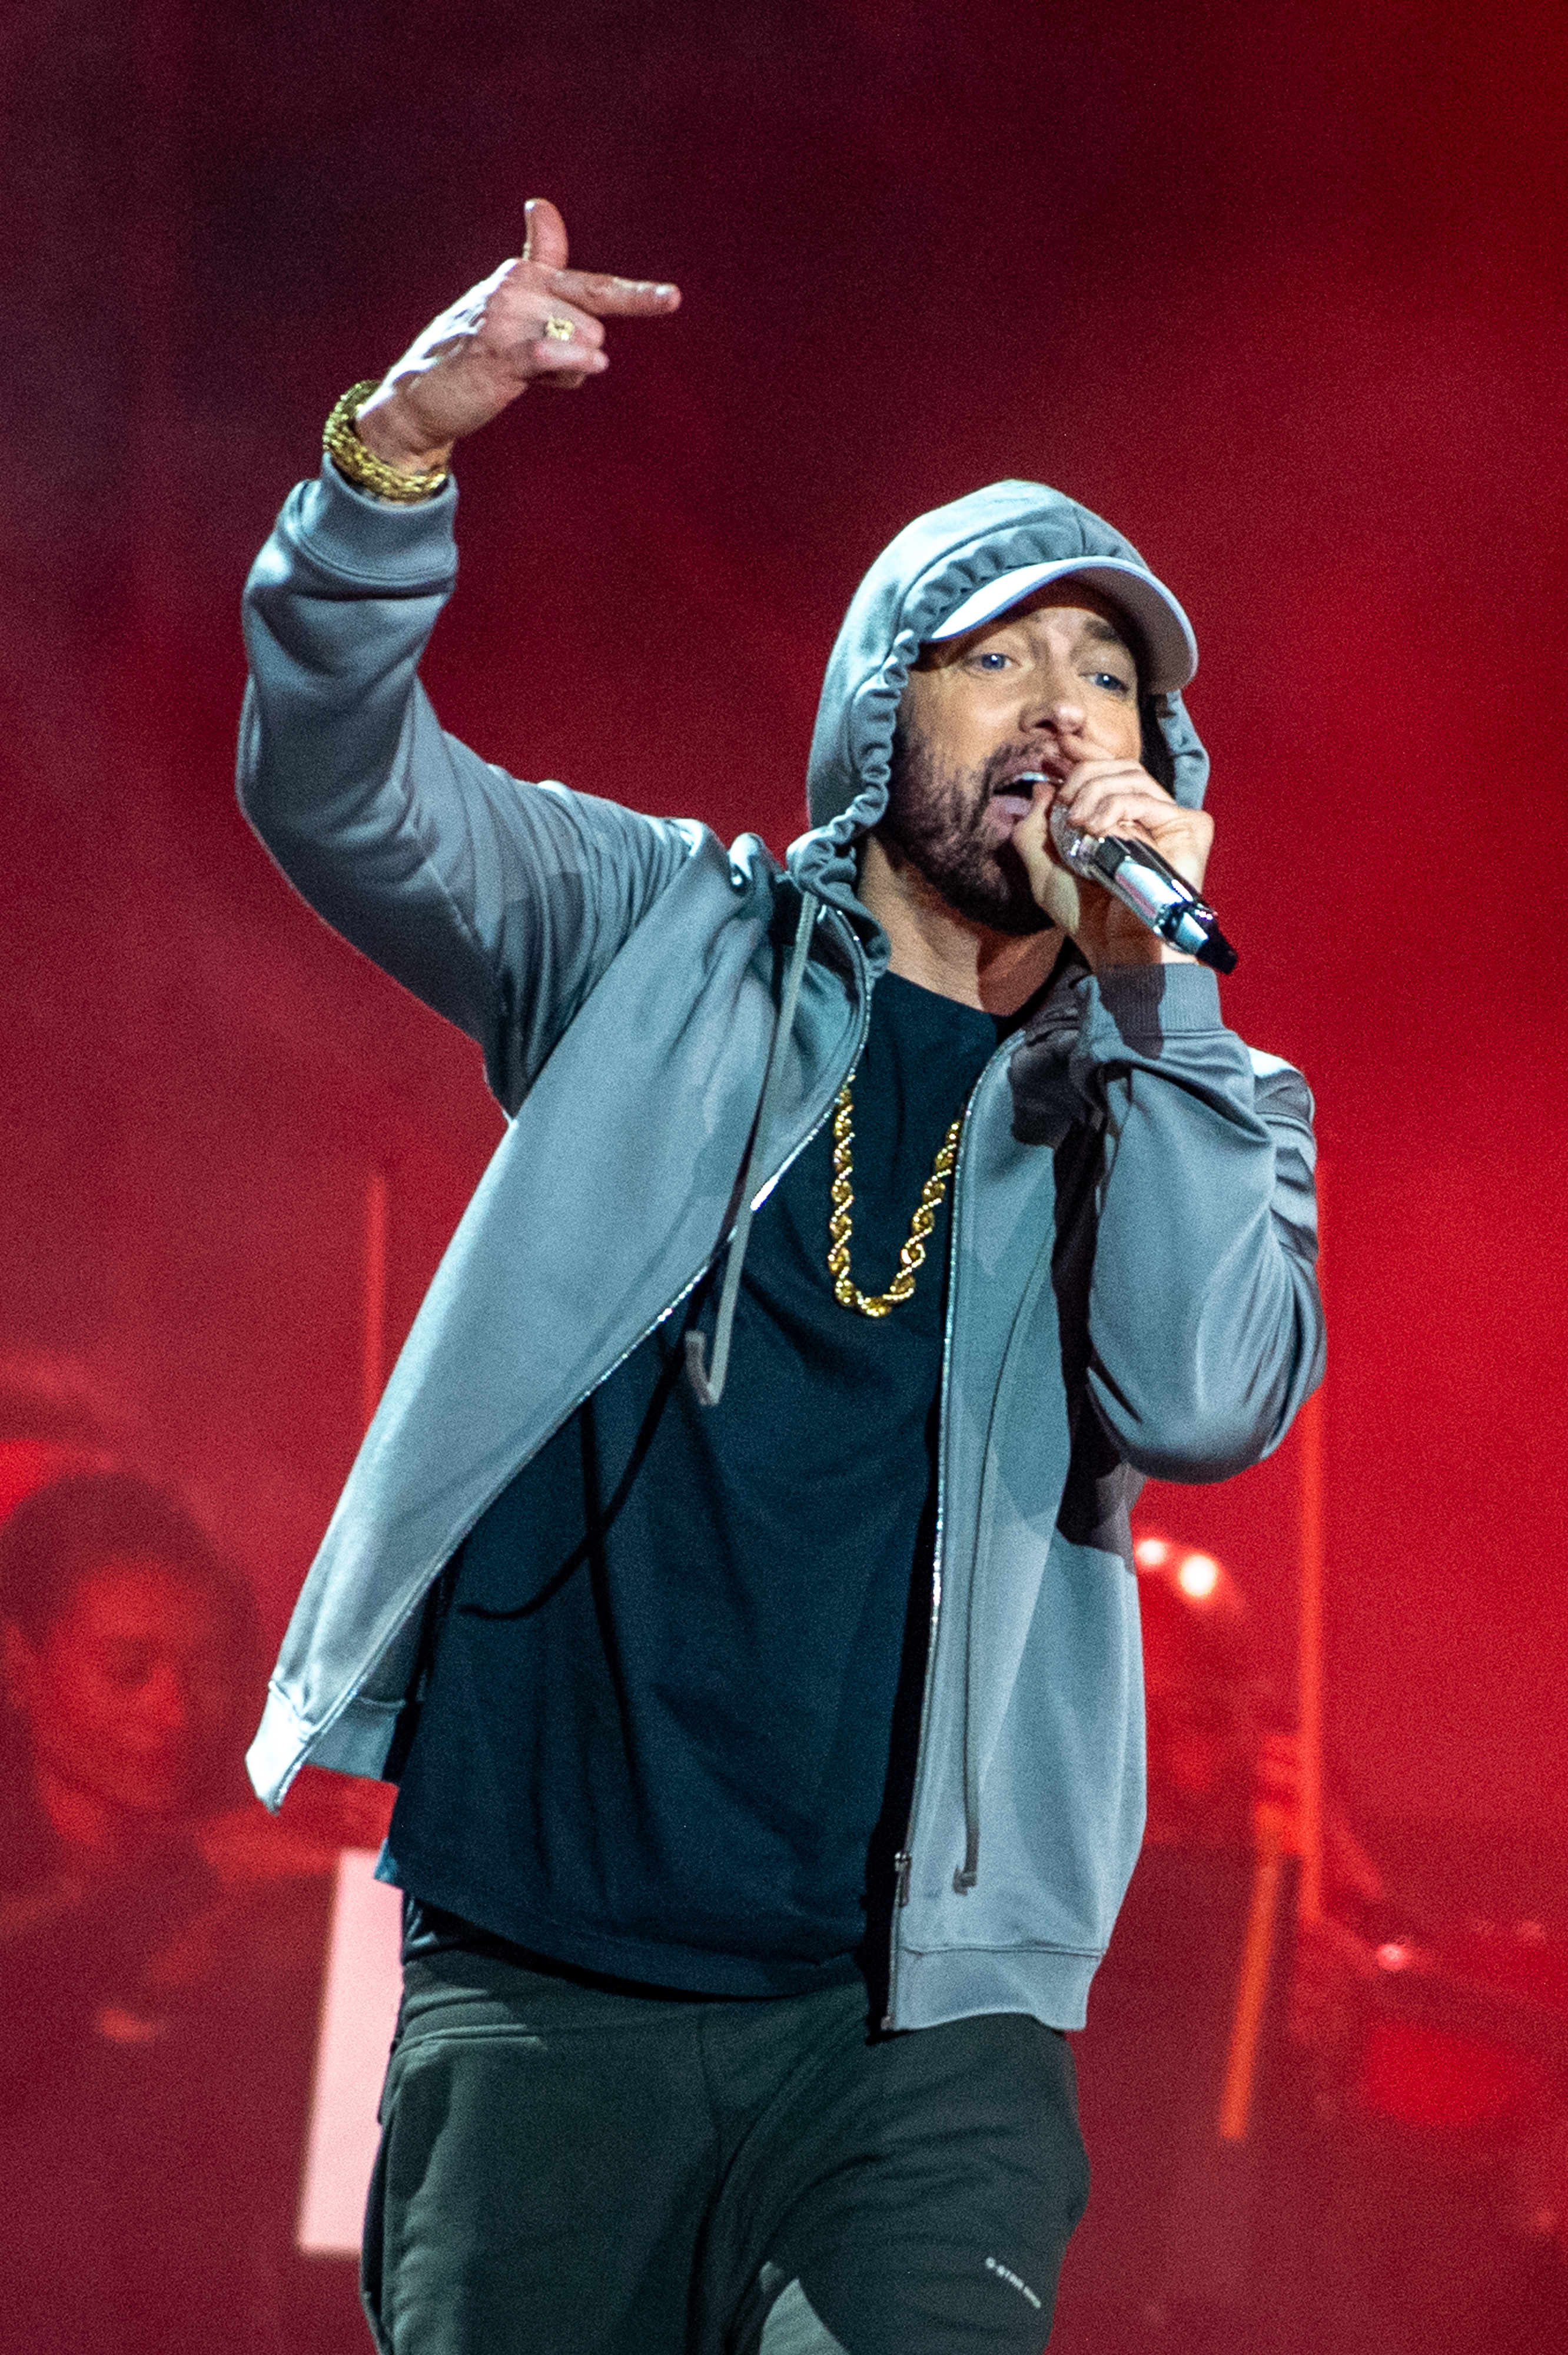 Eminem's new album has upset many groups